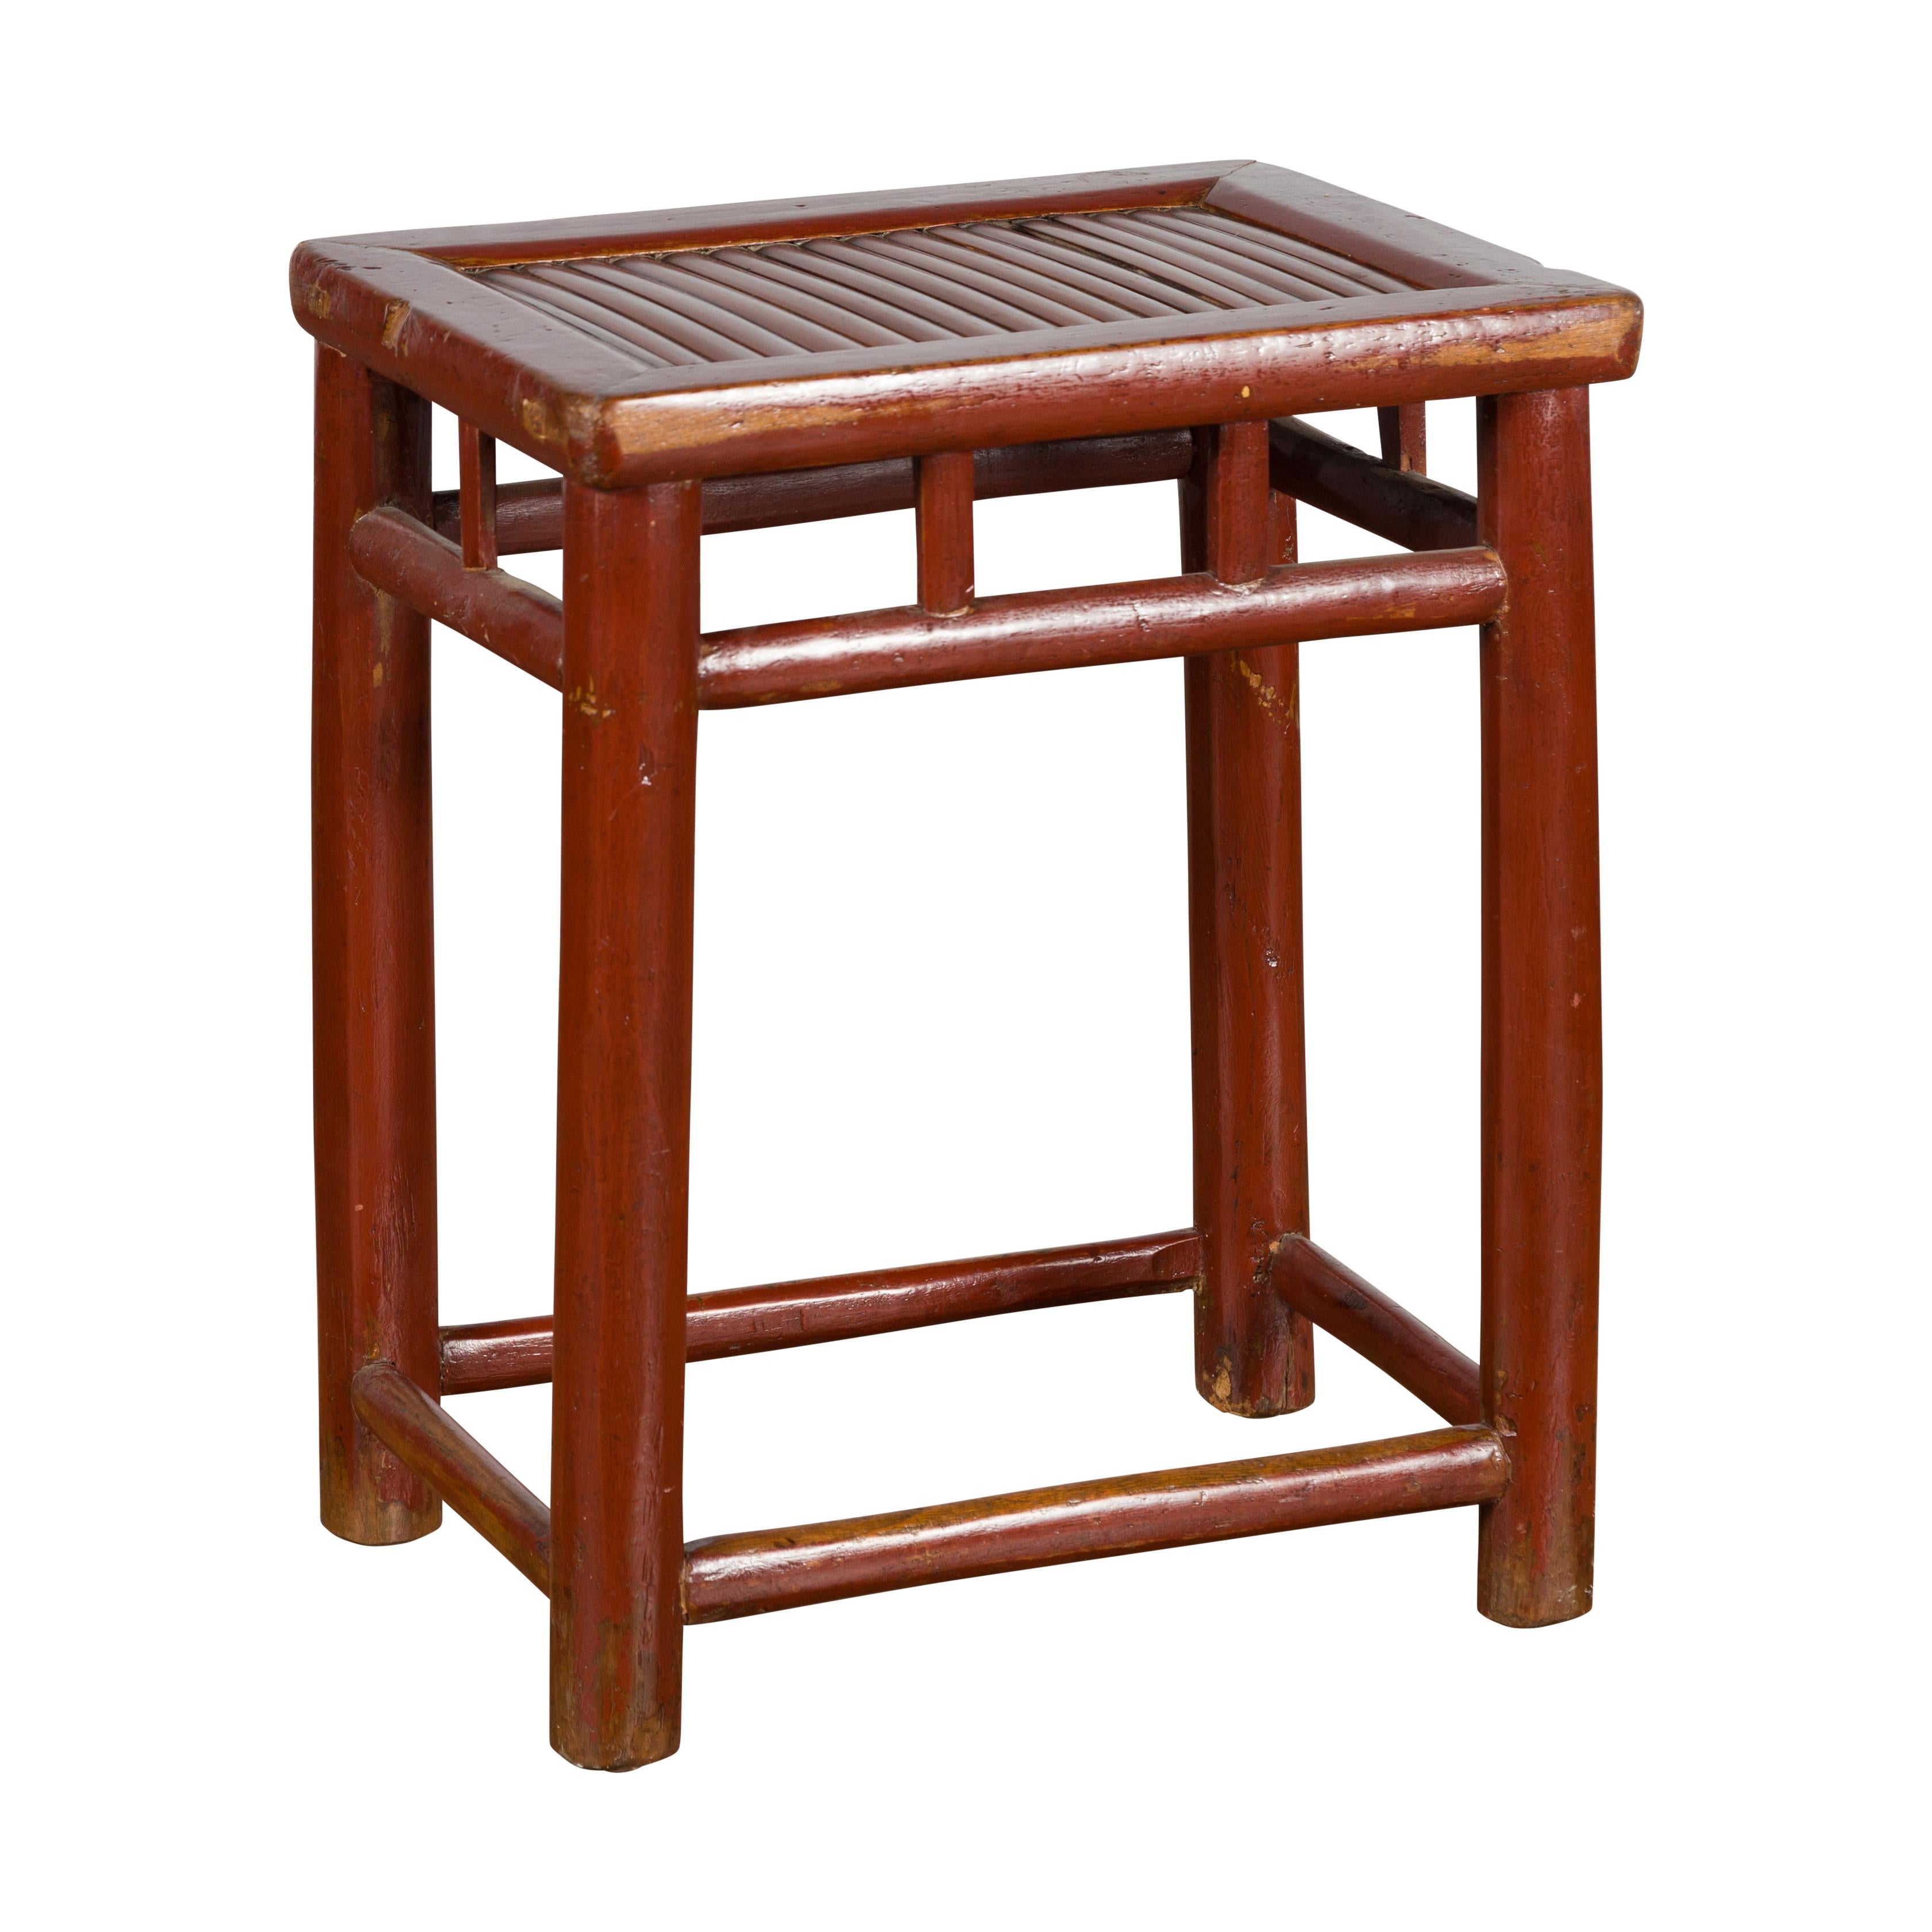 Tabouret chinois laqué brun rougeâtre du début du 20e siècle, avec siège en bambou et motifs de piliers. Créé en Chine au cours des premières années du XXe siècle, ce tabouret en bois présente un plateau rectangulaire avec une assise en bambou,